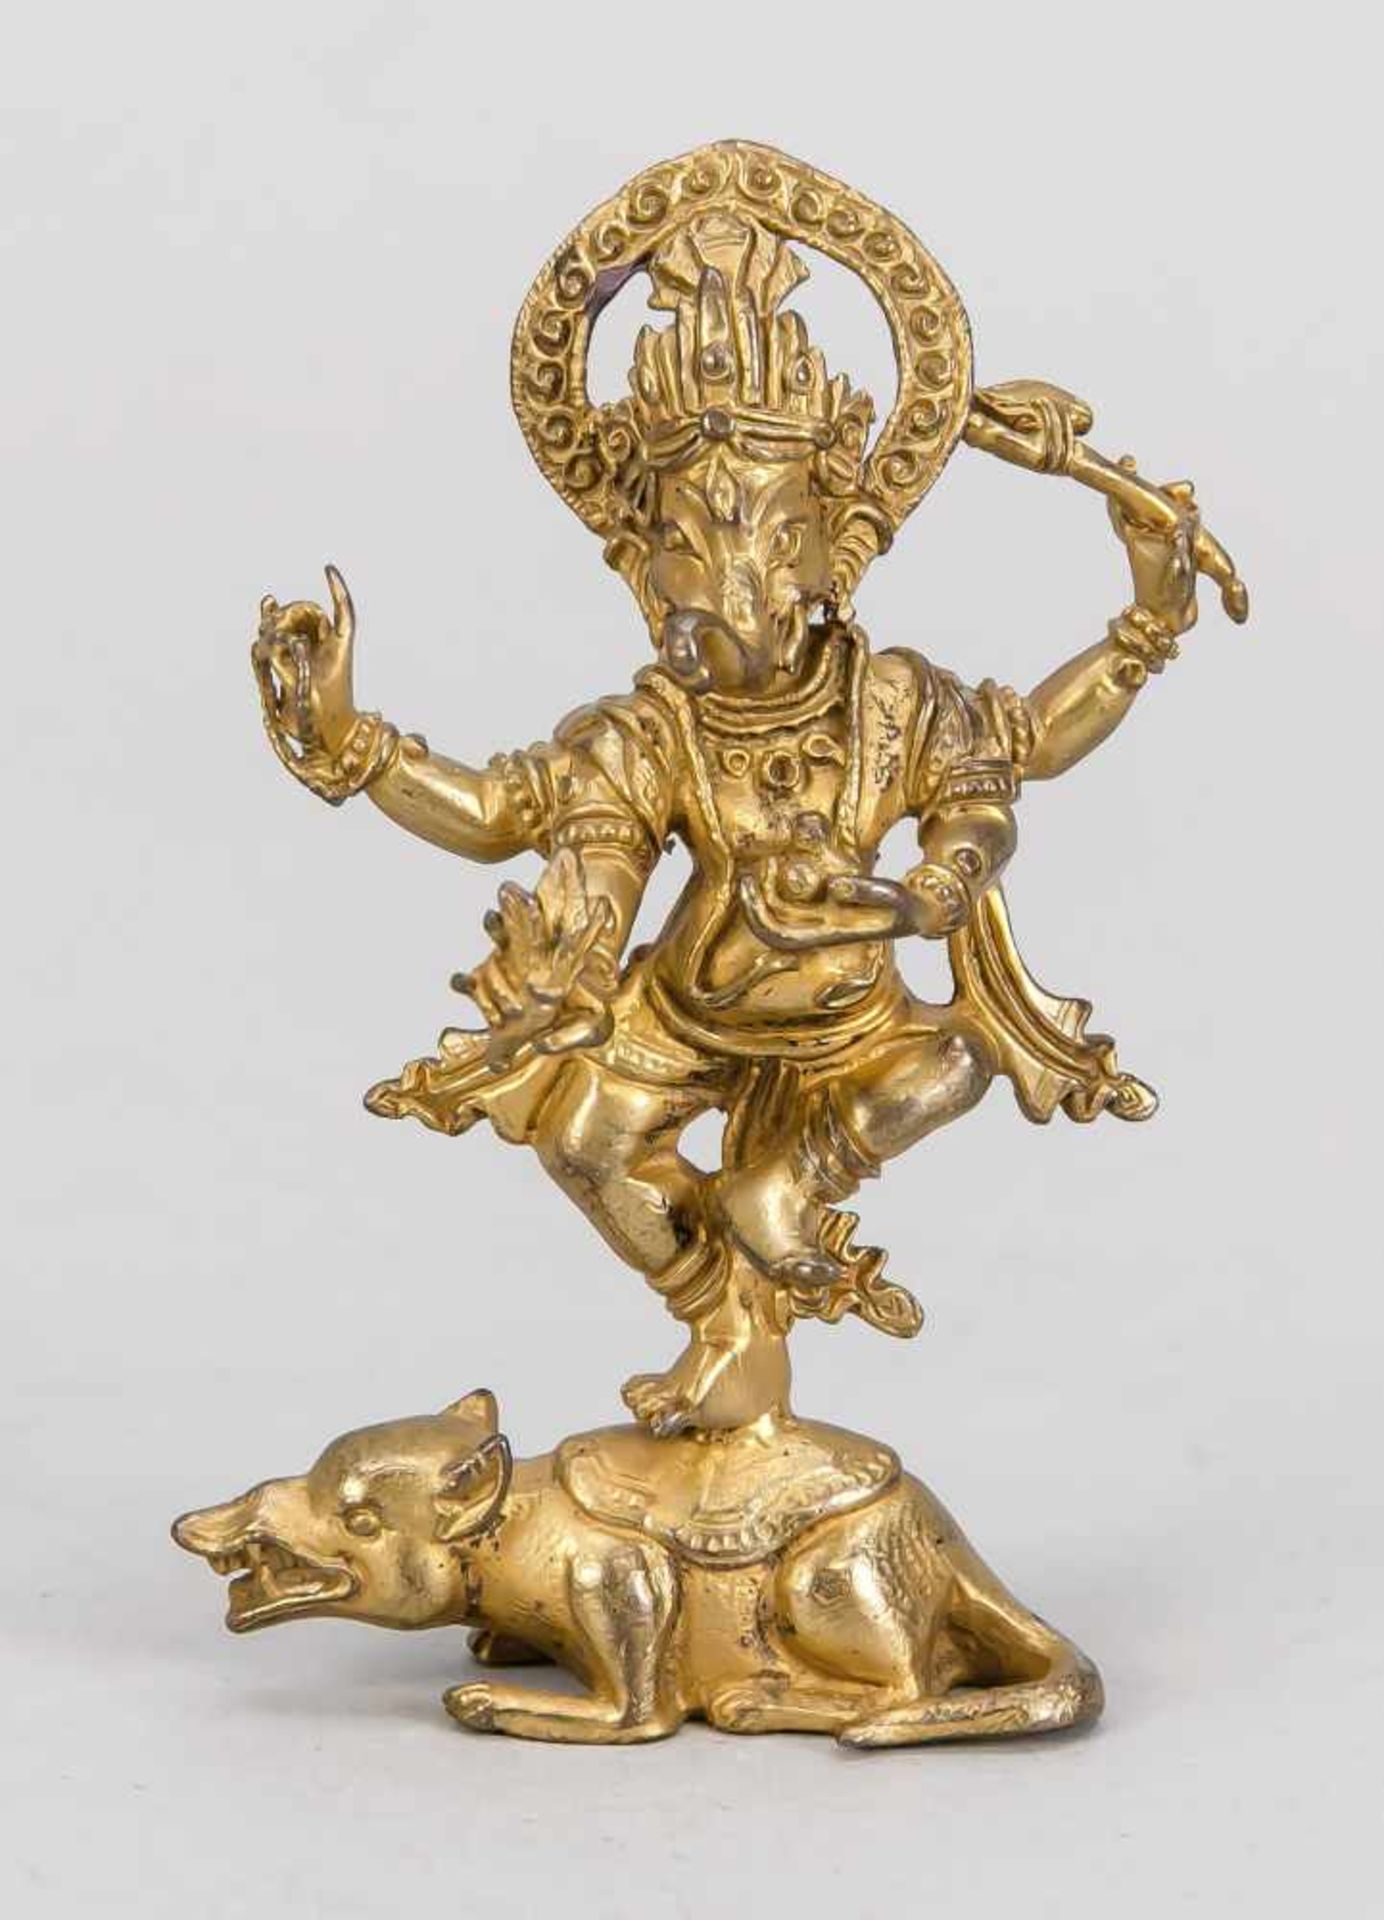 Ganesha auf Ratte, Tibet/Nepal, 19. Jh., Bronze, vergoldet. Vierarmiger Ganesha auf einer